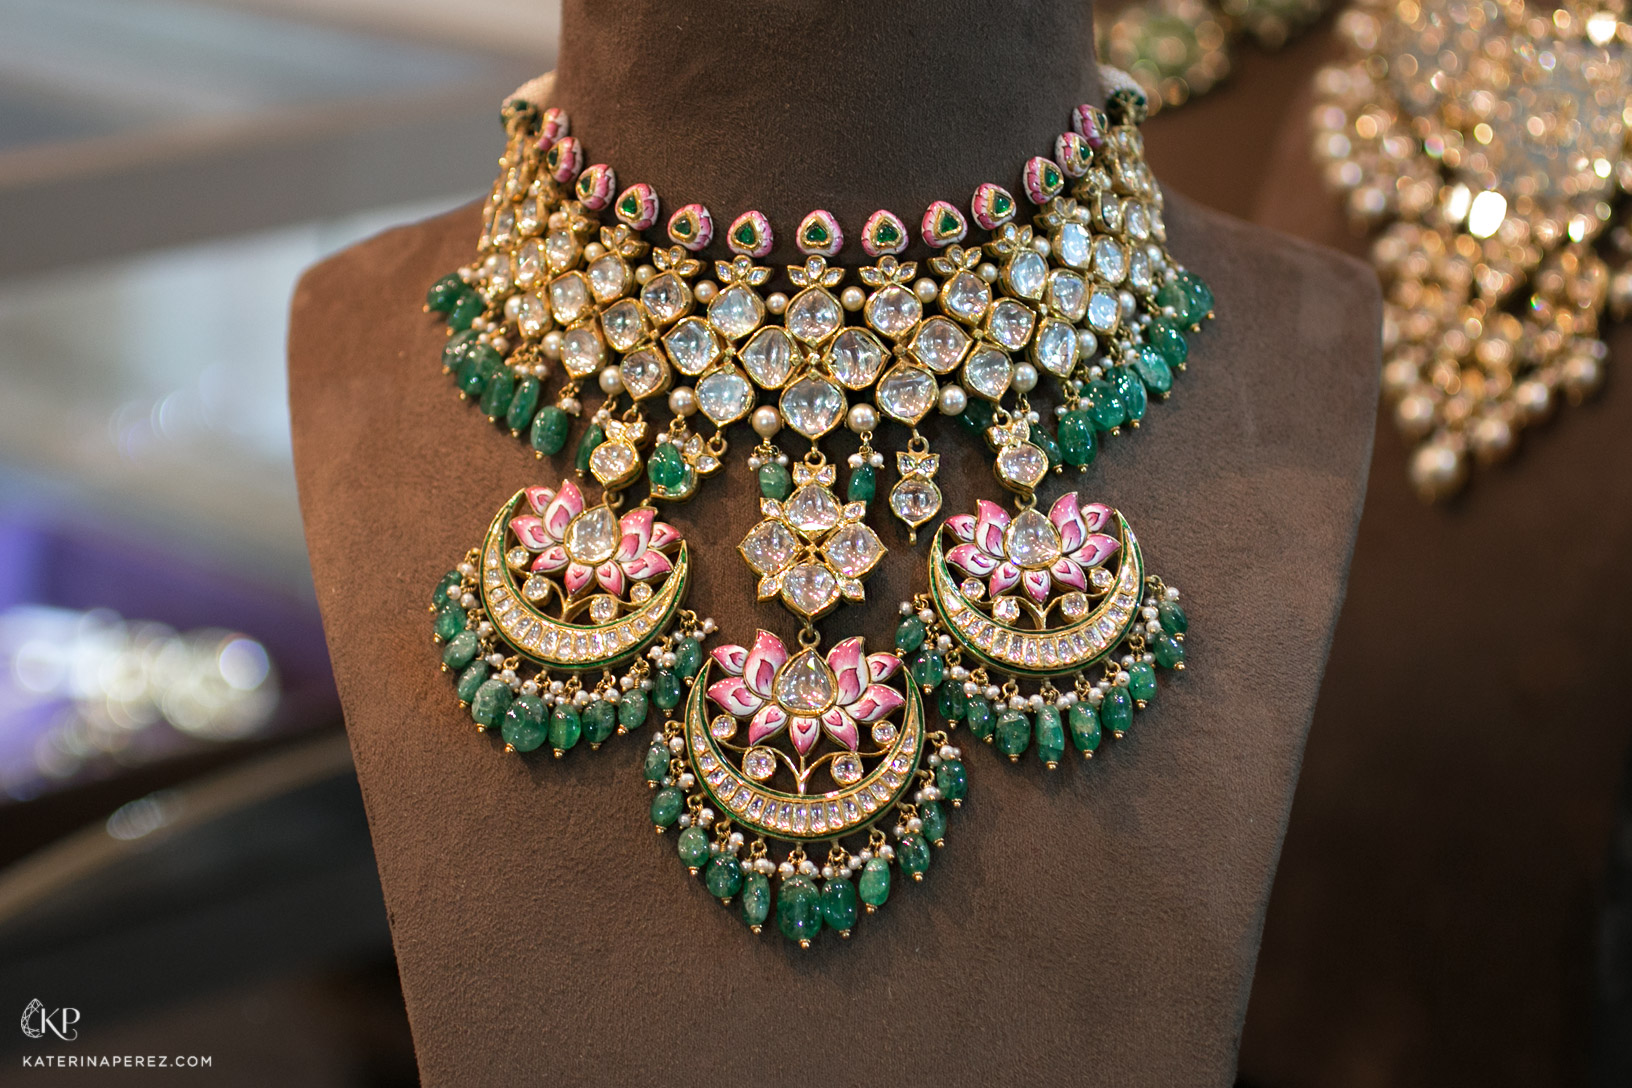 Sunita Shekhawat Padmapriya necklace with lotus flowers motifs